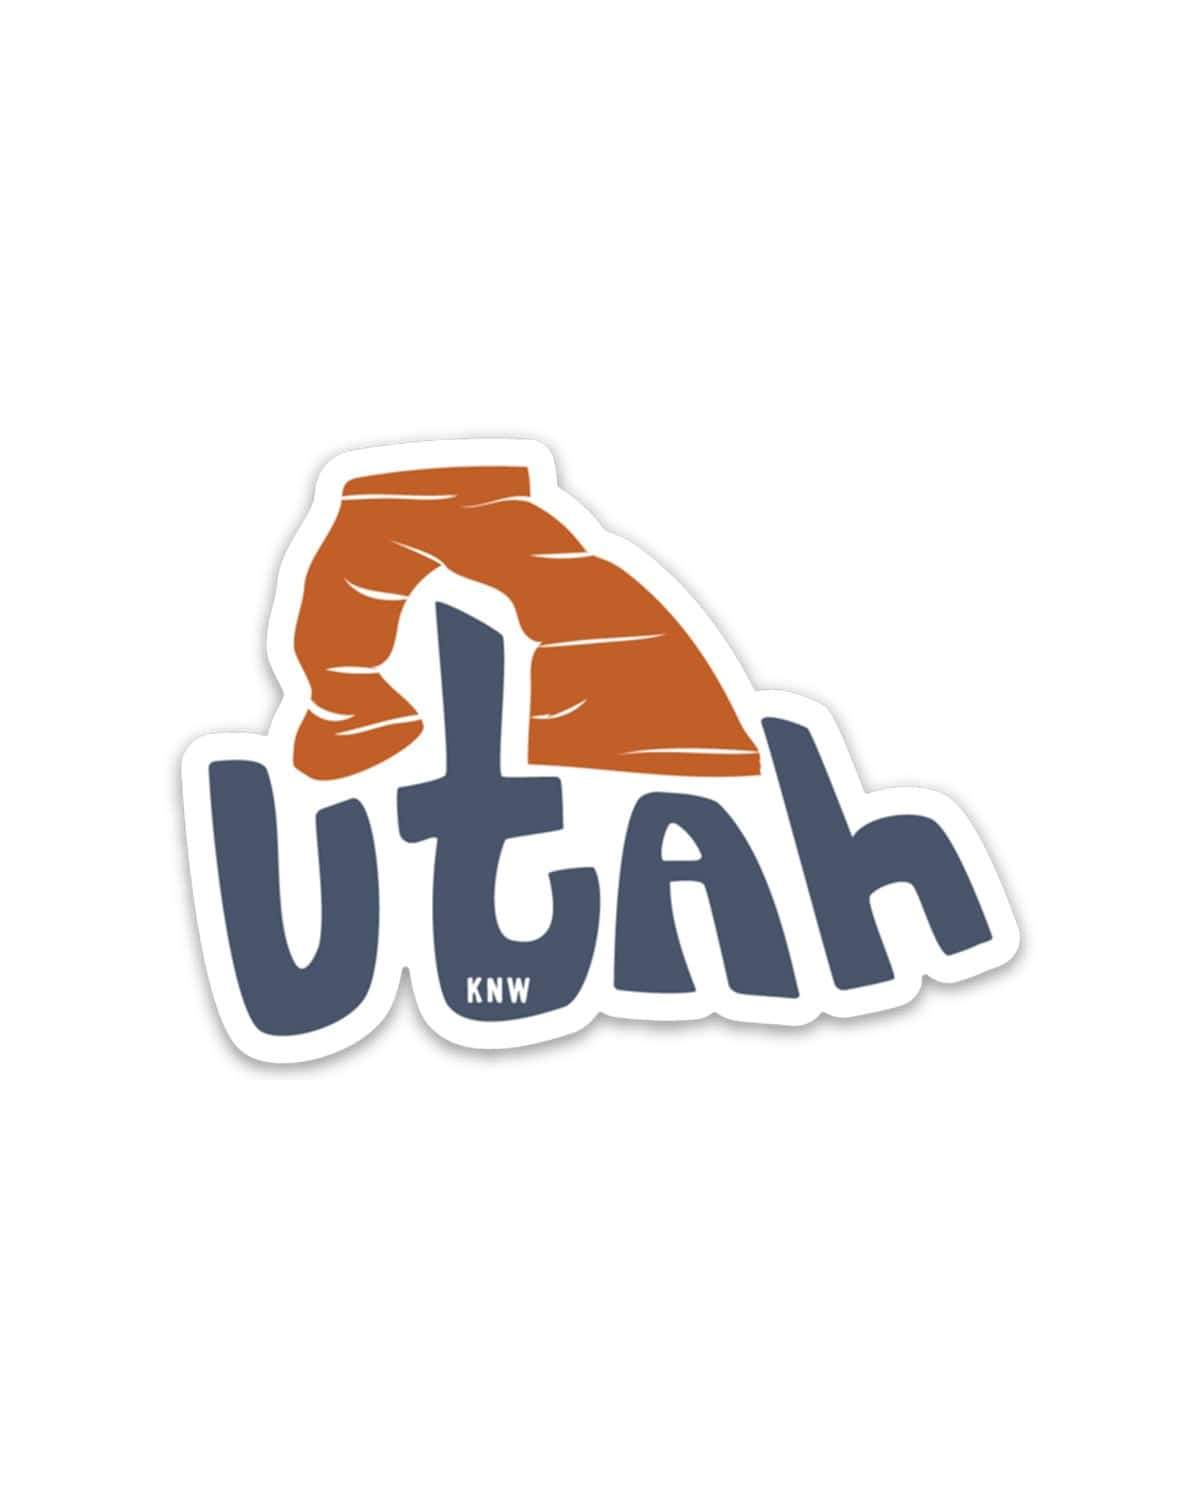 Utah Landscape | Sticker - Keep Nature Wild